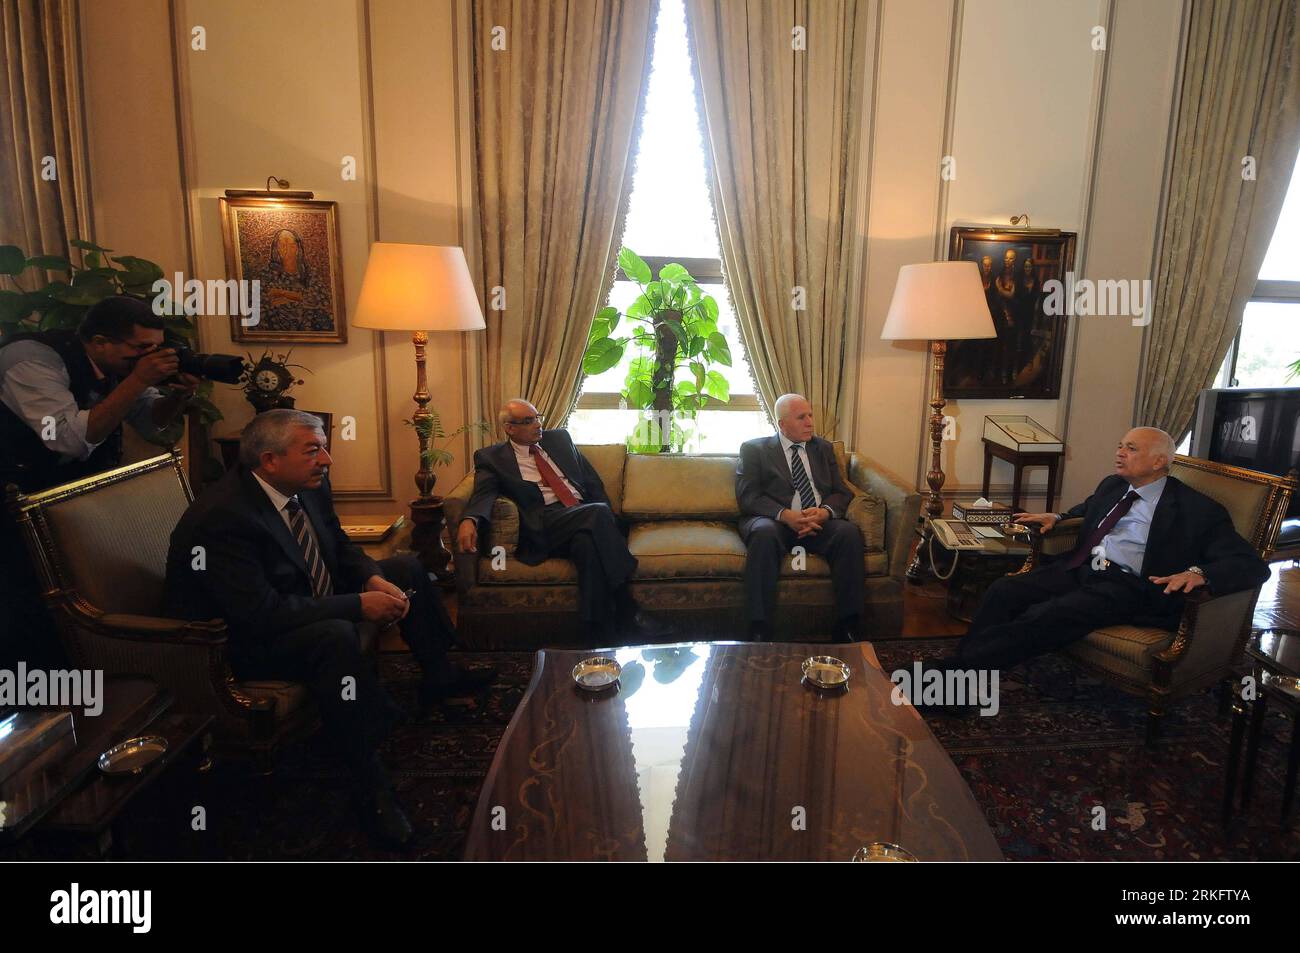 Bildnummer: 55458838 Datum: 15.06.2011 Copyright: imago/Xinhua (110615) -- CAIRO, 15 giugno 2011 (Xinhua) -- il ministro degli Esteri egiziano Nabil el-Arabi (1st R) incontra Azzam el-Ahmad (2nd R), capo della delegazione Fatah, al Ministero degli Esteri egiziano al Cairo, Egitto, 15 giugno 2011. (Xinhua/Ayman mosse) (lyi) EGITTO-CAIRO-FM-PALESTINA-MEETING PUBLICATIONxNOTxINxCHN People Politik x0x xkg 2011 quer Bildnummer 55458838 Data 15 06 2011 Copyright Imago XINHUA Cairo 15 giugno 2011 XINHUA ministri degli Esteri egiziani Nabil El Arabi 1° r incontra Azzam El Ahmad 2° r capo della Fatah Delega Foto Stock